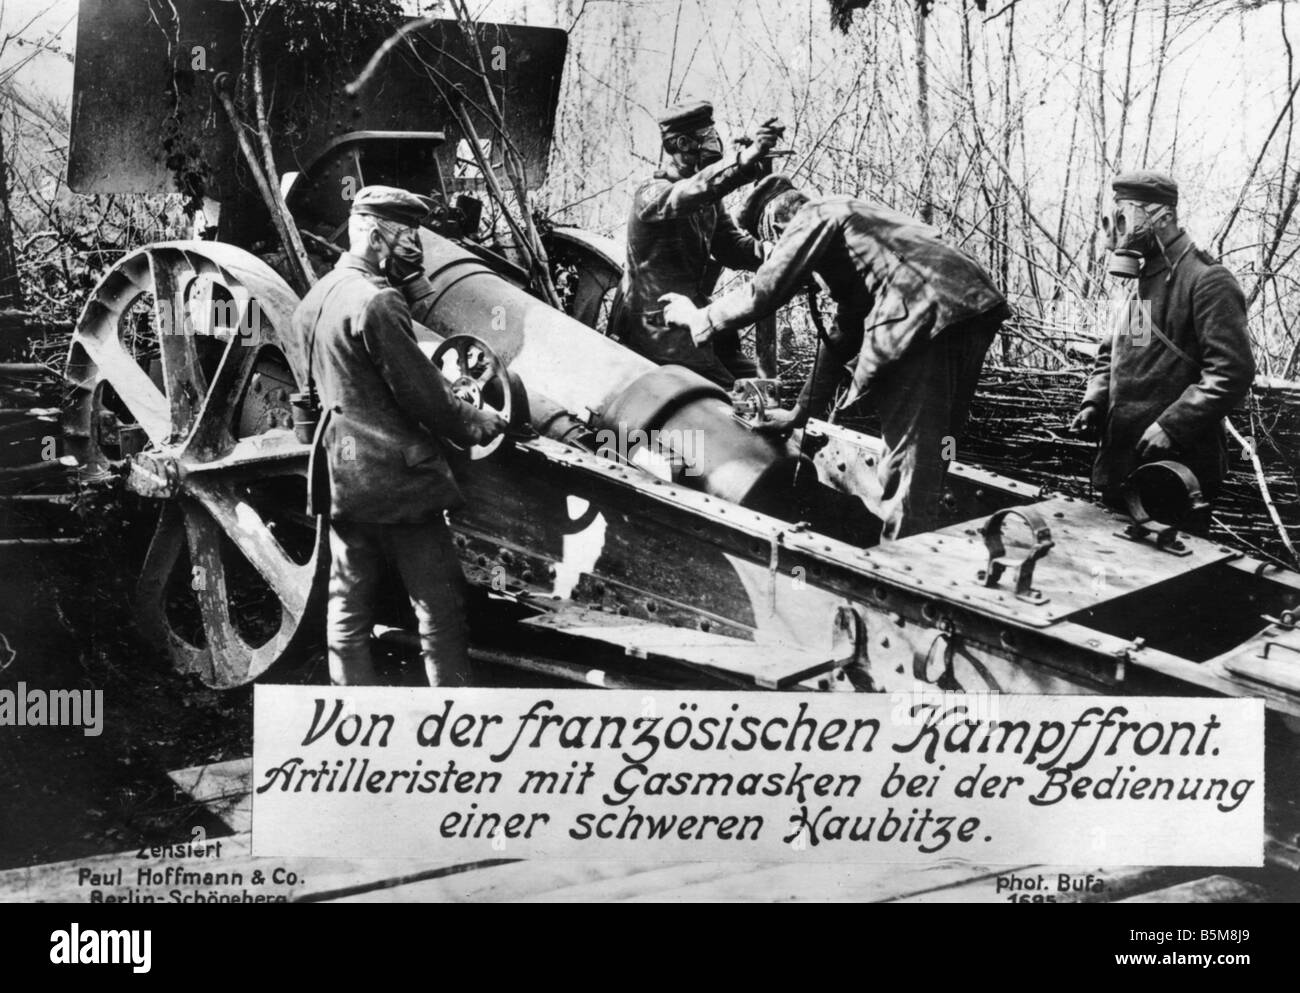 2 G55 G1 1914 obice tedesco la Prima Guerra Mondiale La Storia La Prima Guerra Mondiale guerra del gas tedesco artiglieri con carico gasmasks un obice pesante a Foto Stock